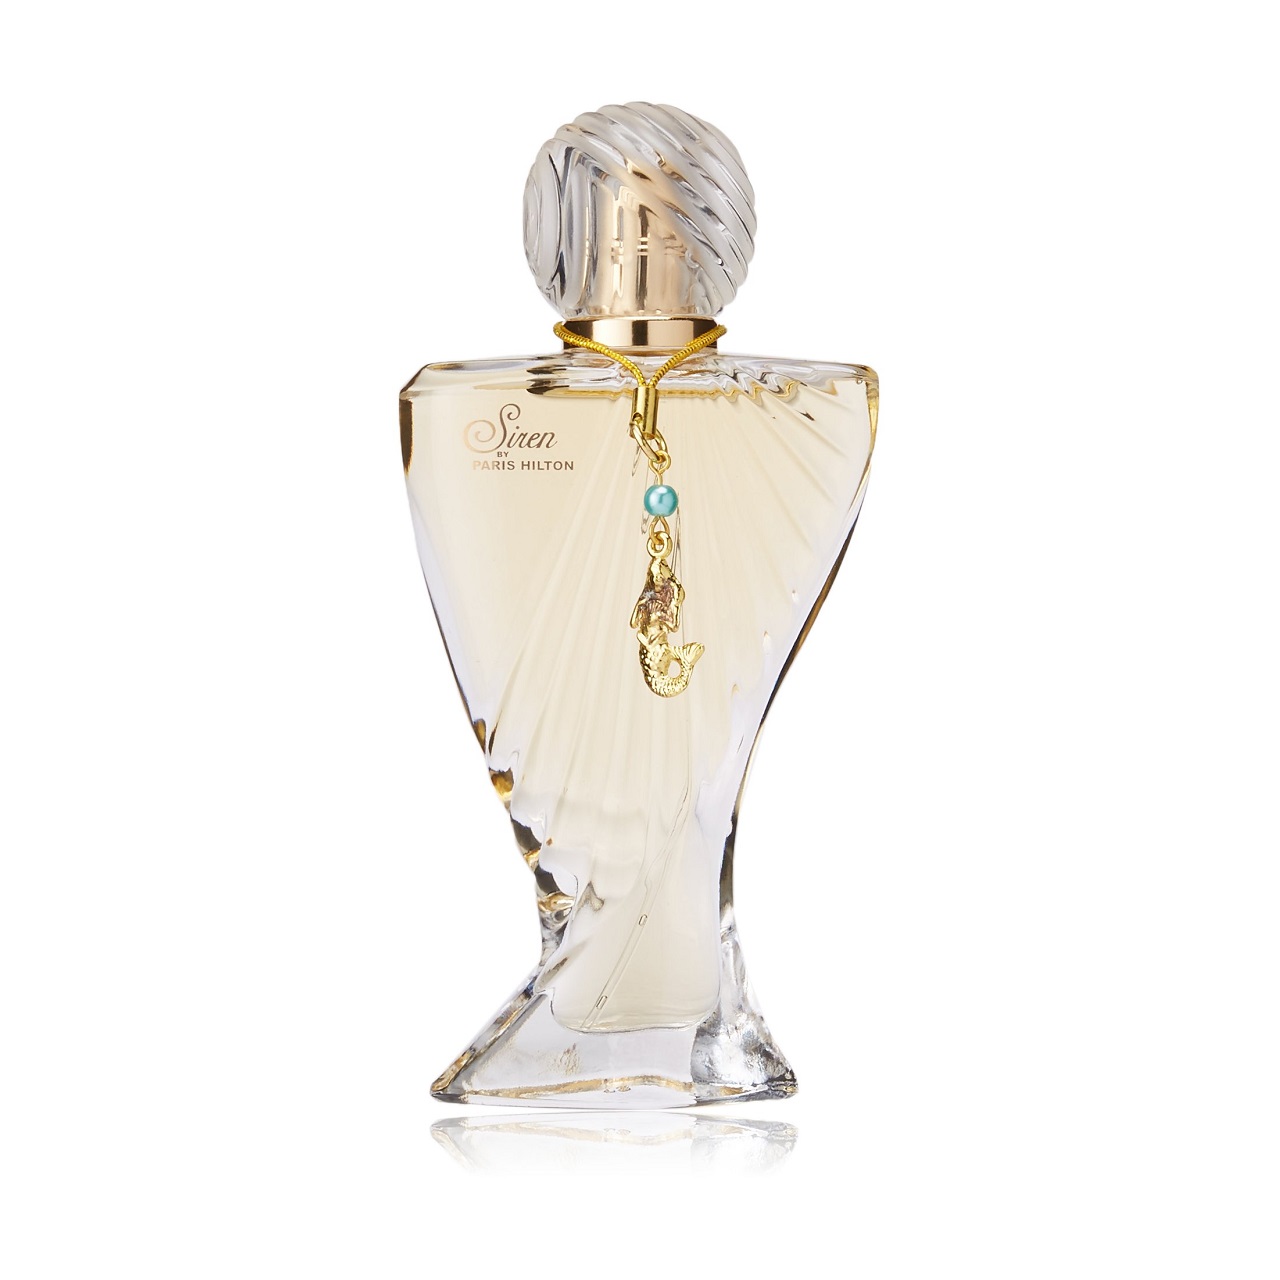 ادوپرفیوم زنانه پاریس هیلتون مدل SIREN عطری خنک و شیرین با رایحه گلی و کهربایی که در سال 2009 توسط Honorine Blanc طراحی و به بازار معرفی شده است.